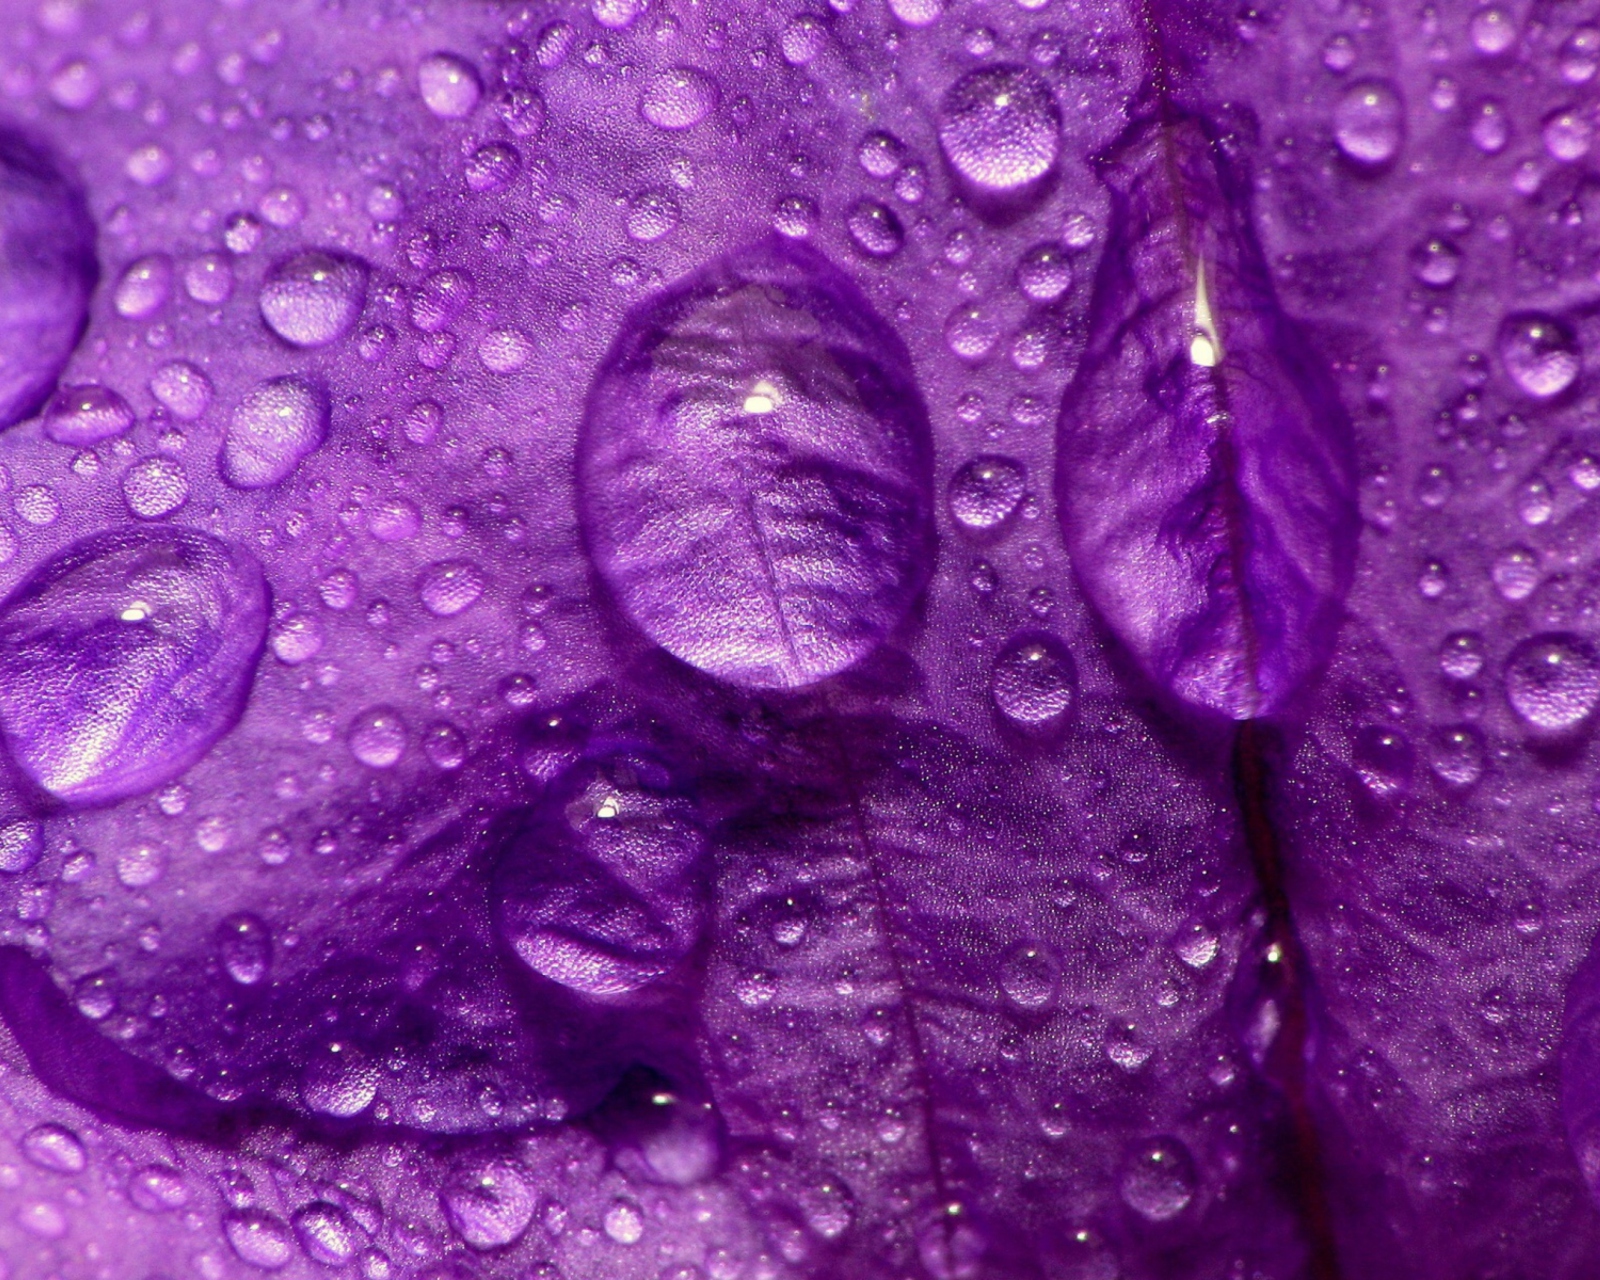 Dew Drops On Violet Petals wallpaper 1600x1280